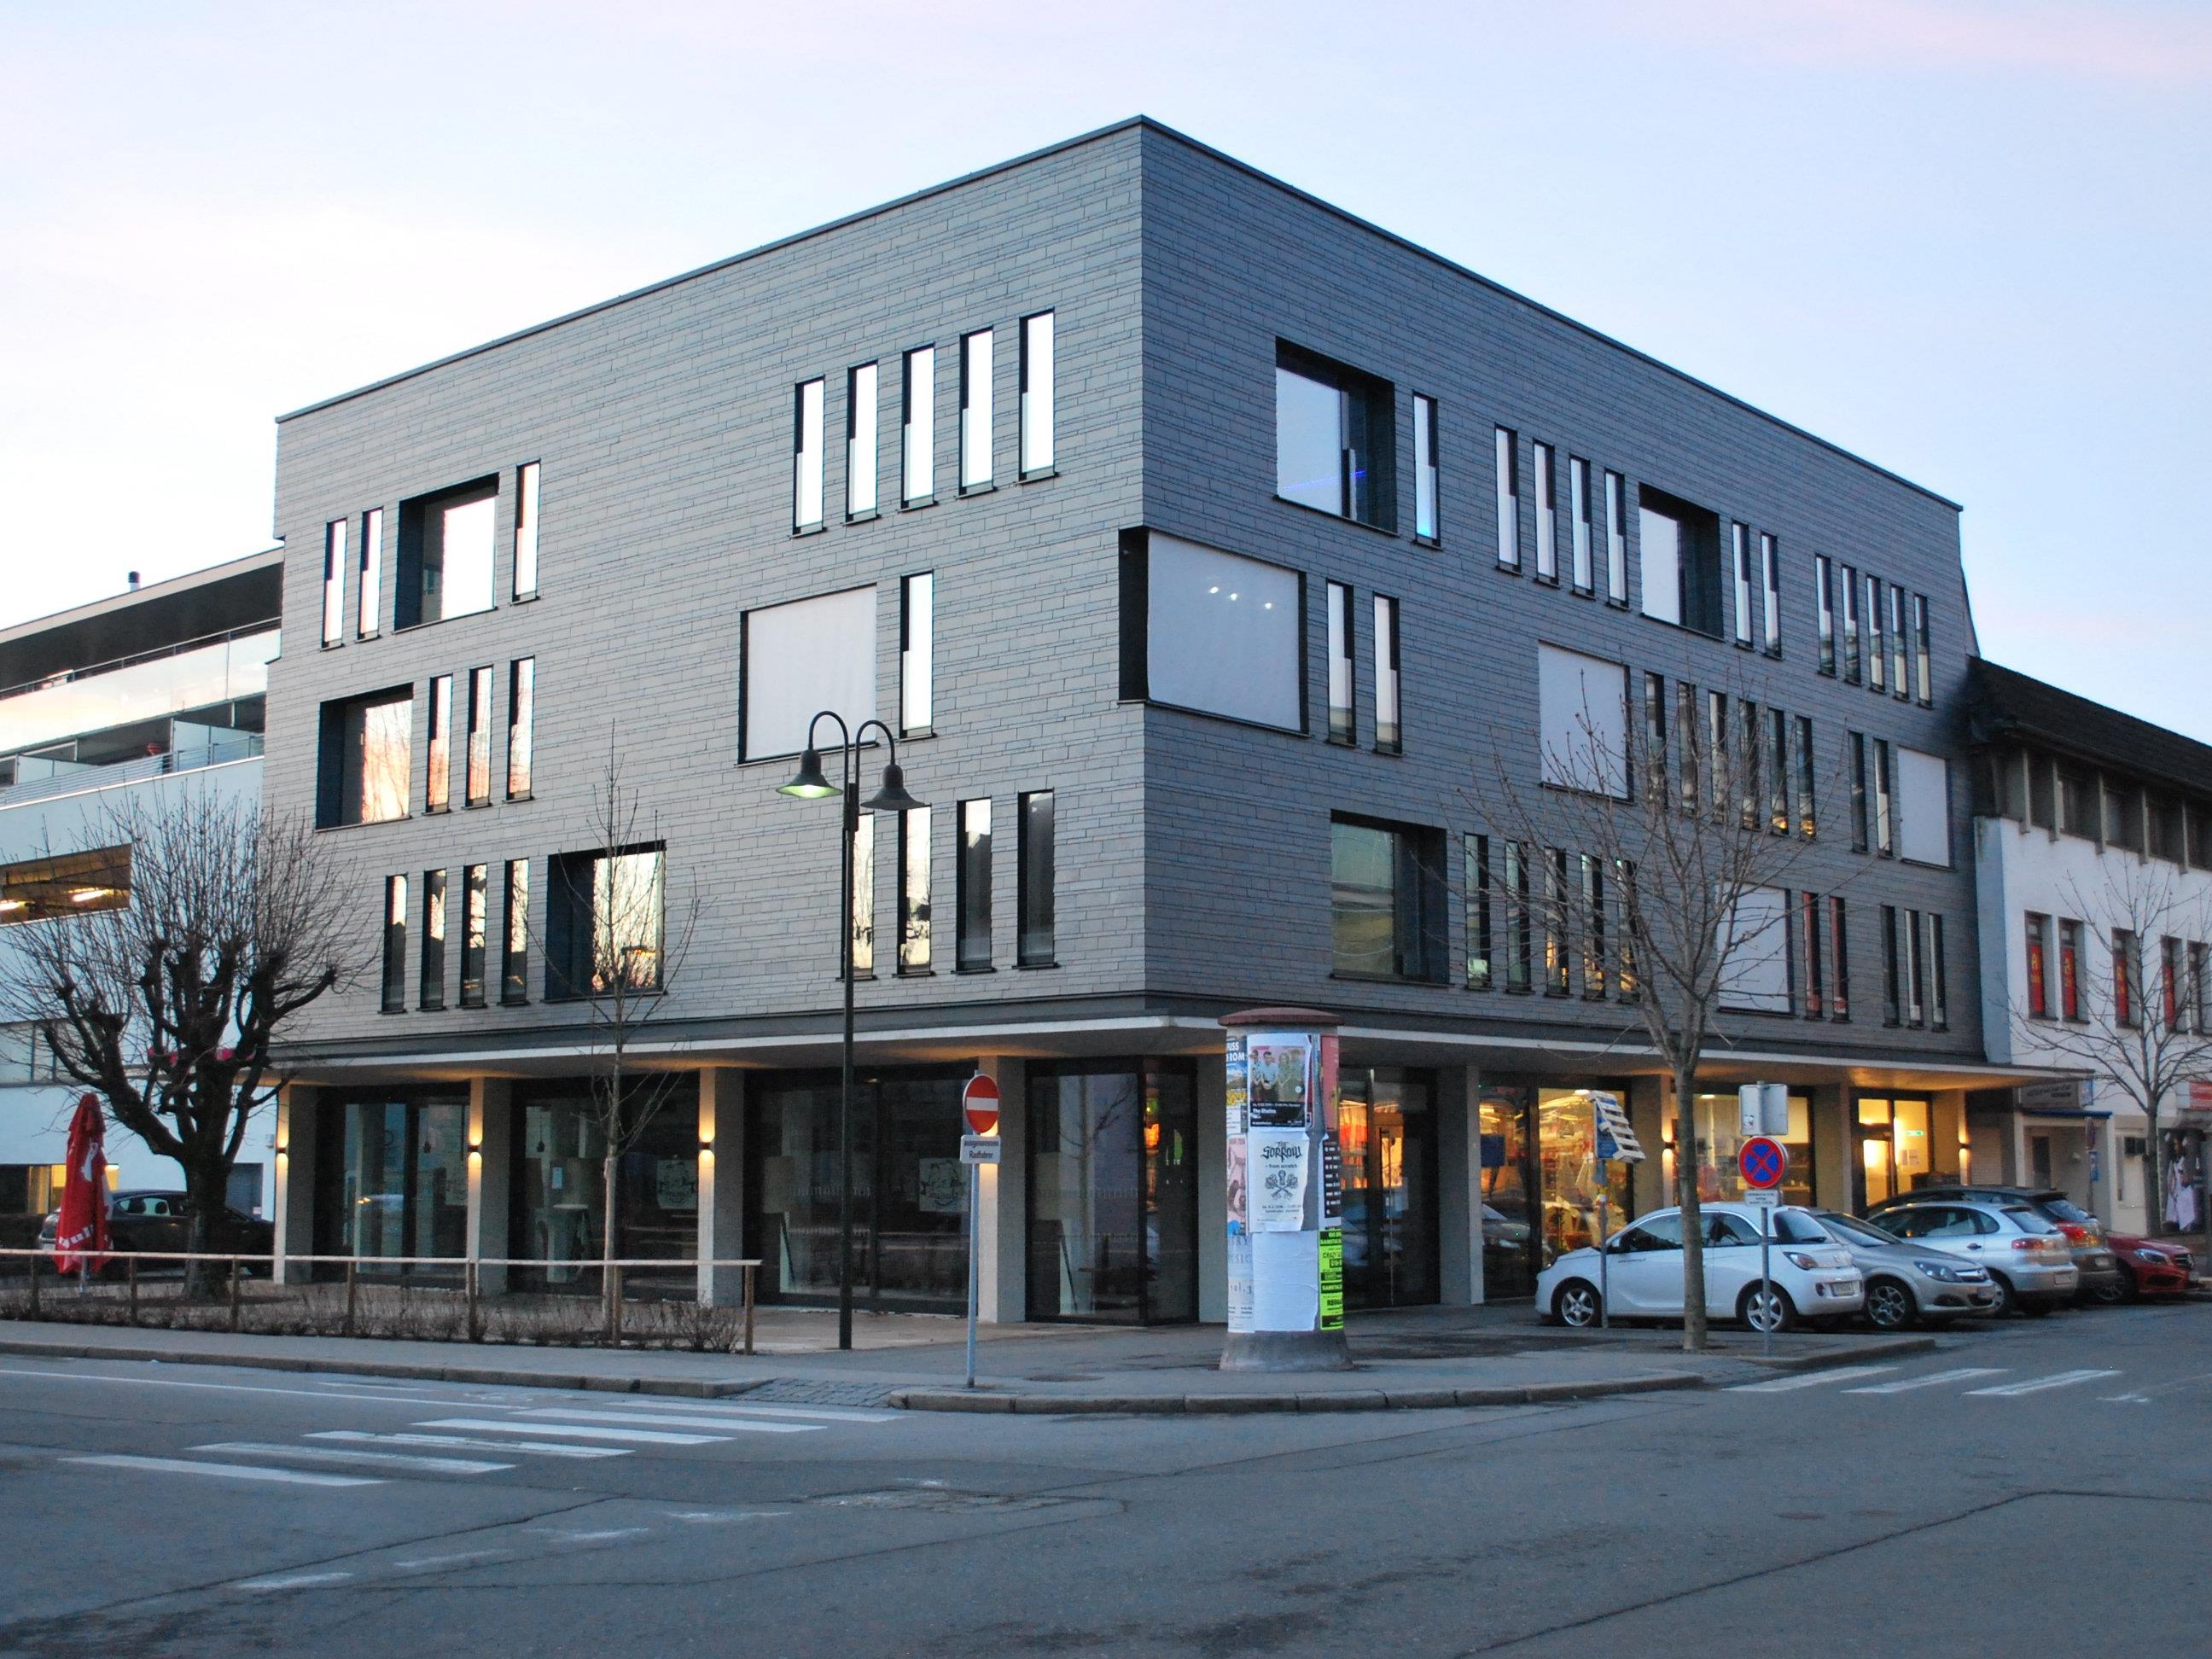 Das Vereinshaus als markanter architektonischer Blickfang in der Innenstadt.